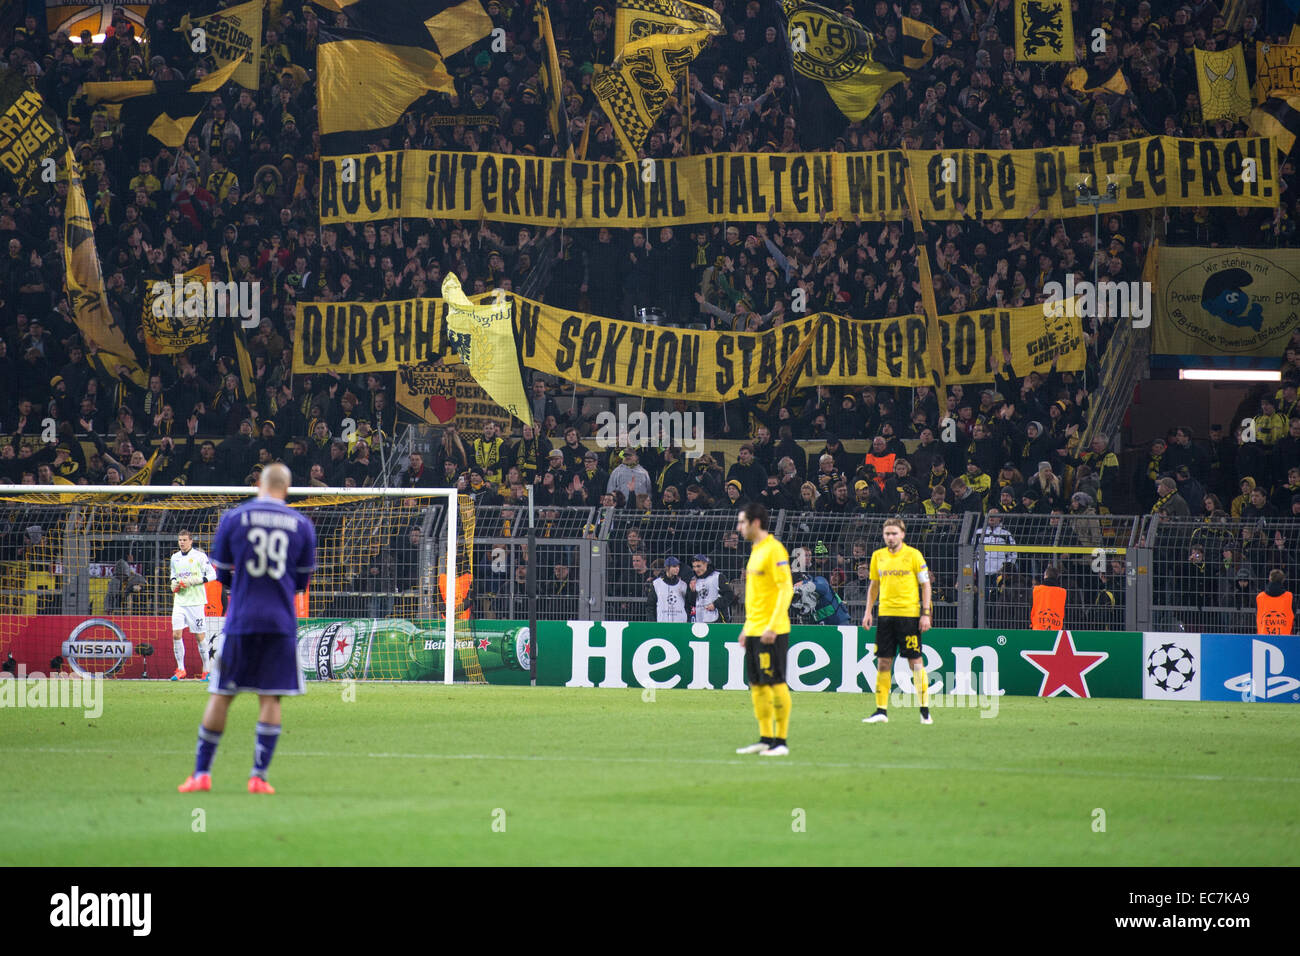 Dortmund, Alemania. 09Dec, 2014. Los fans de Dortmund sostienen una  pancarta que dice "Auch wir halten internacional Eure Plätze frei!' (lit.  "Incluso a nivel internacional tenemos a su asiento! Perseverar - sección